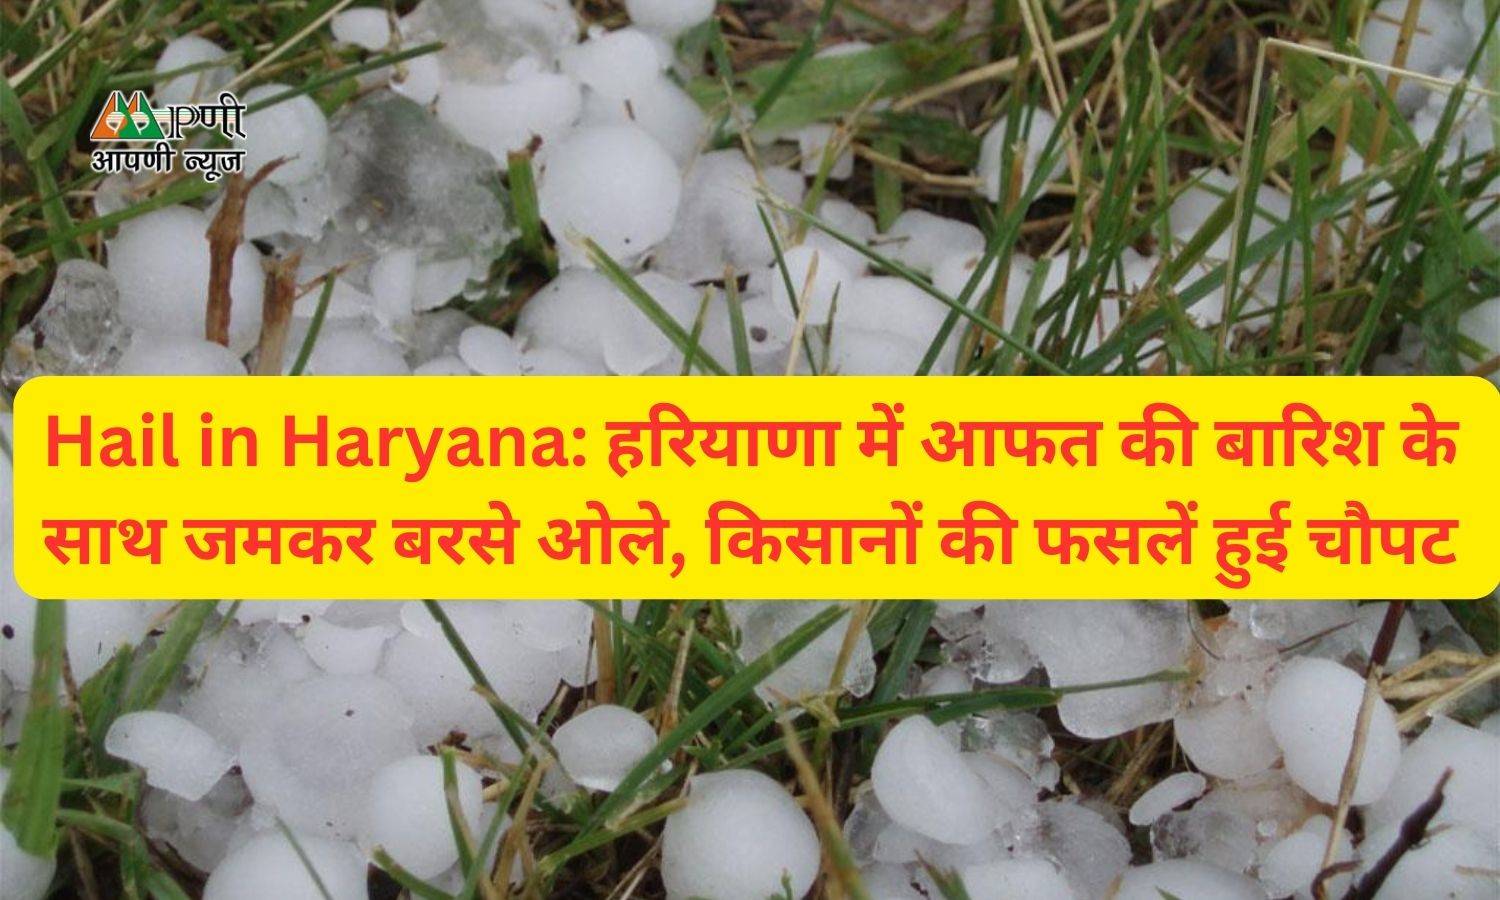 Hail in Haryana: हरियाणा में आफत की बारिश के साथ जमकर बरसे ओले, किसानों की फसलें हुई चौपट